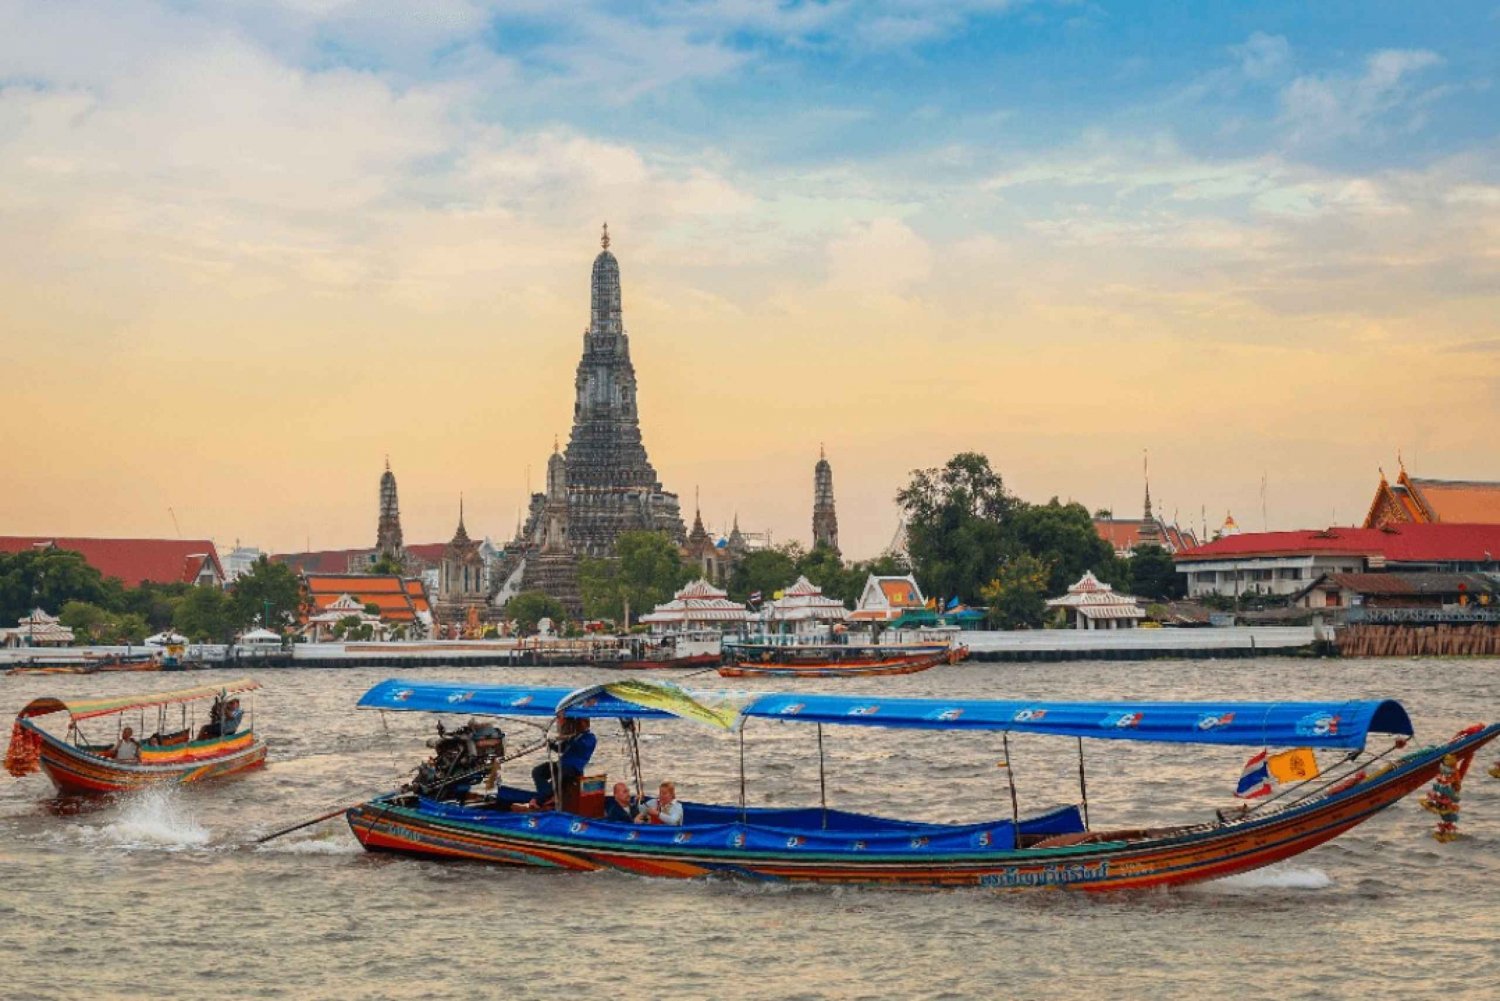 Bangkok : Participez à une excursion en bateau à longue queue sur les canaux